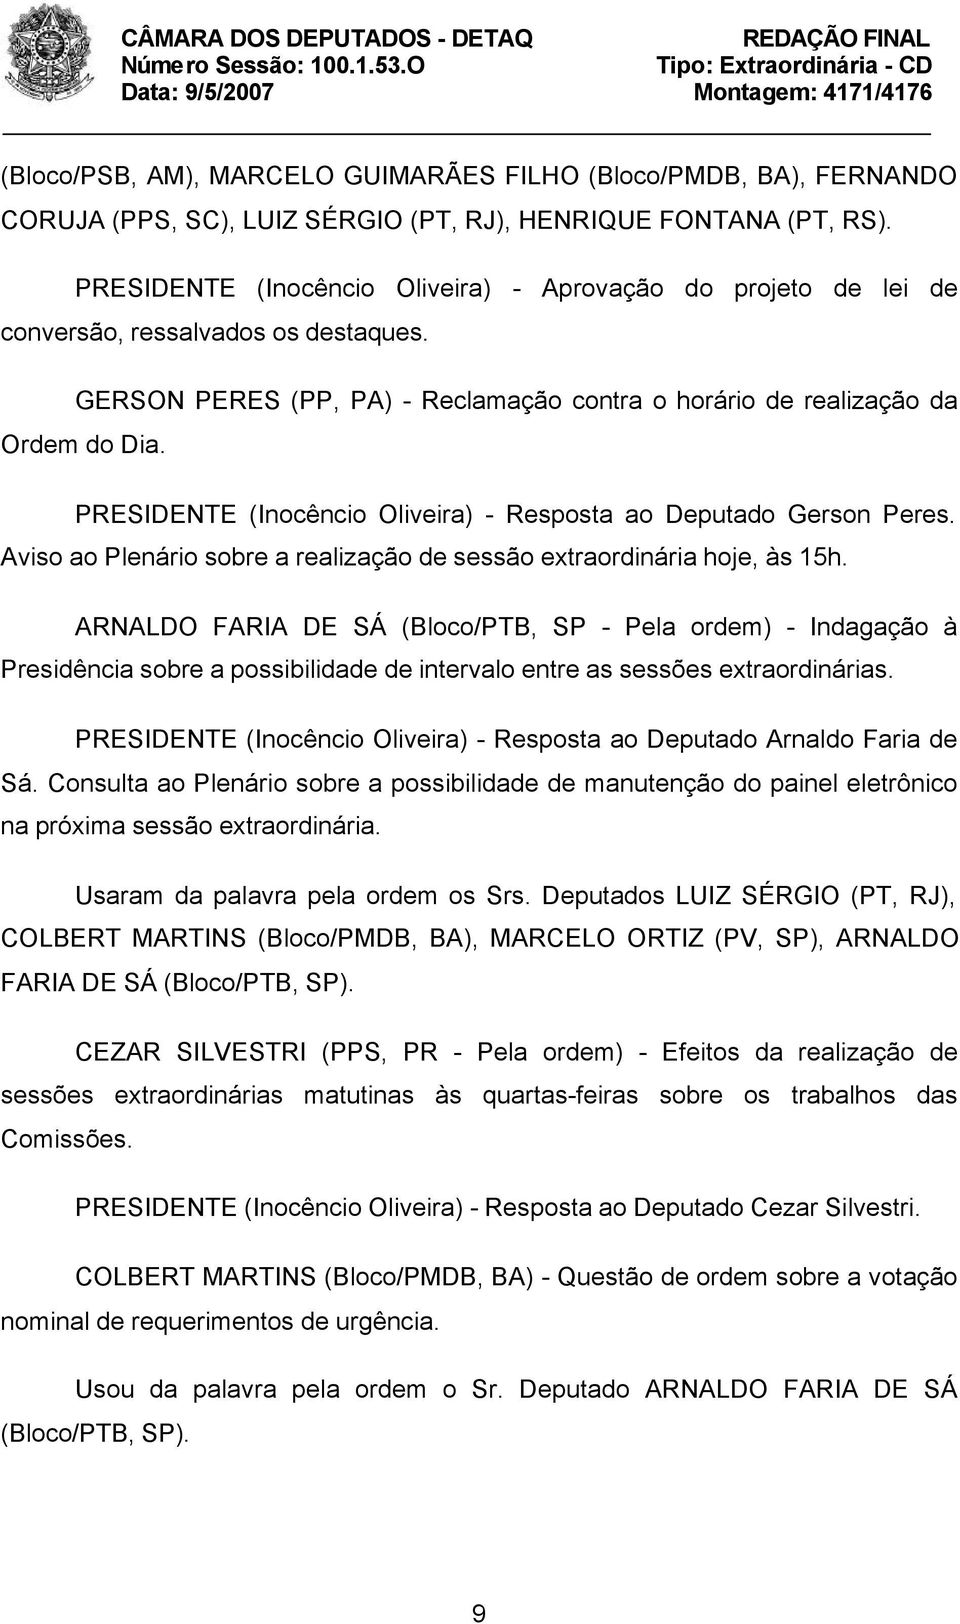 PRESIDENTE (Inocêncio Oliveira) - Resposta ao Deputado Gerson Peres. Aviso ao Plenário sobre a realização de sessão extraordinária hoje, às 15h.